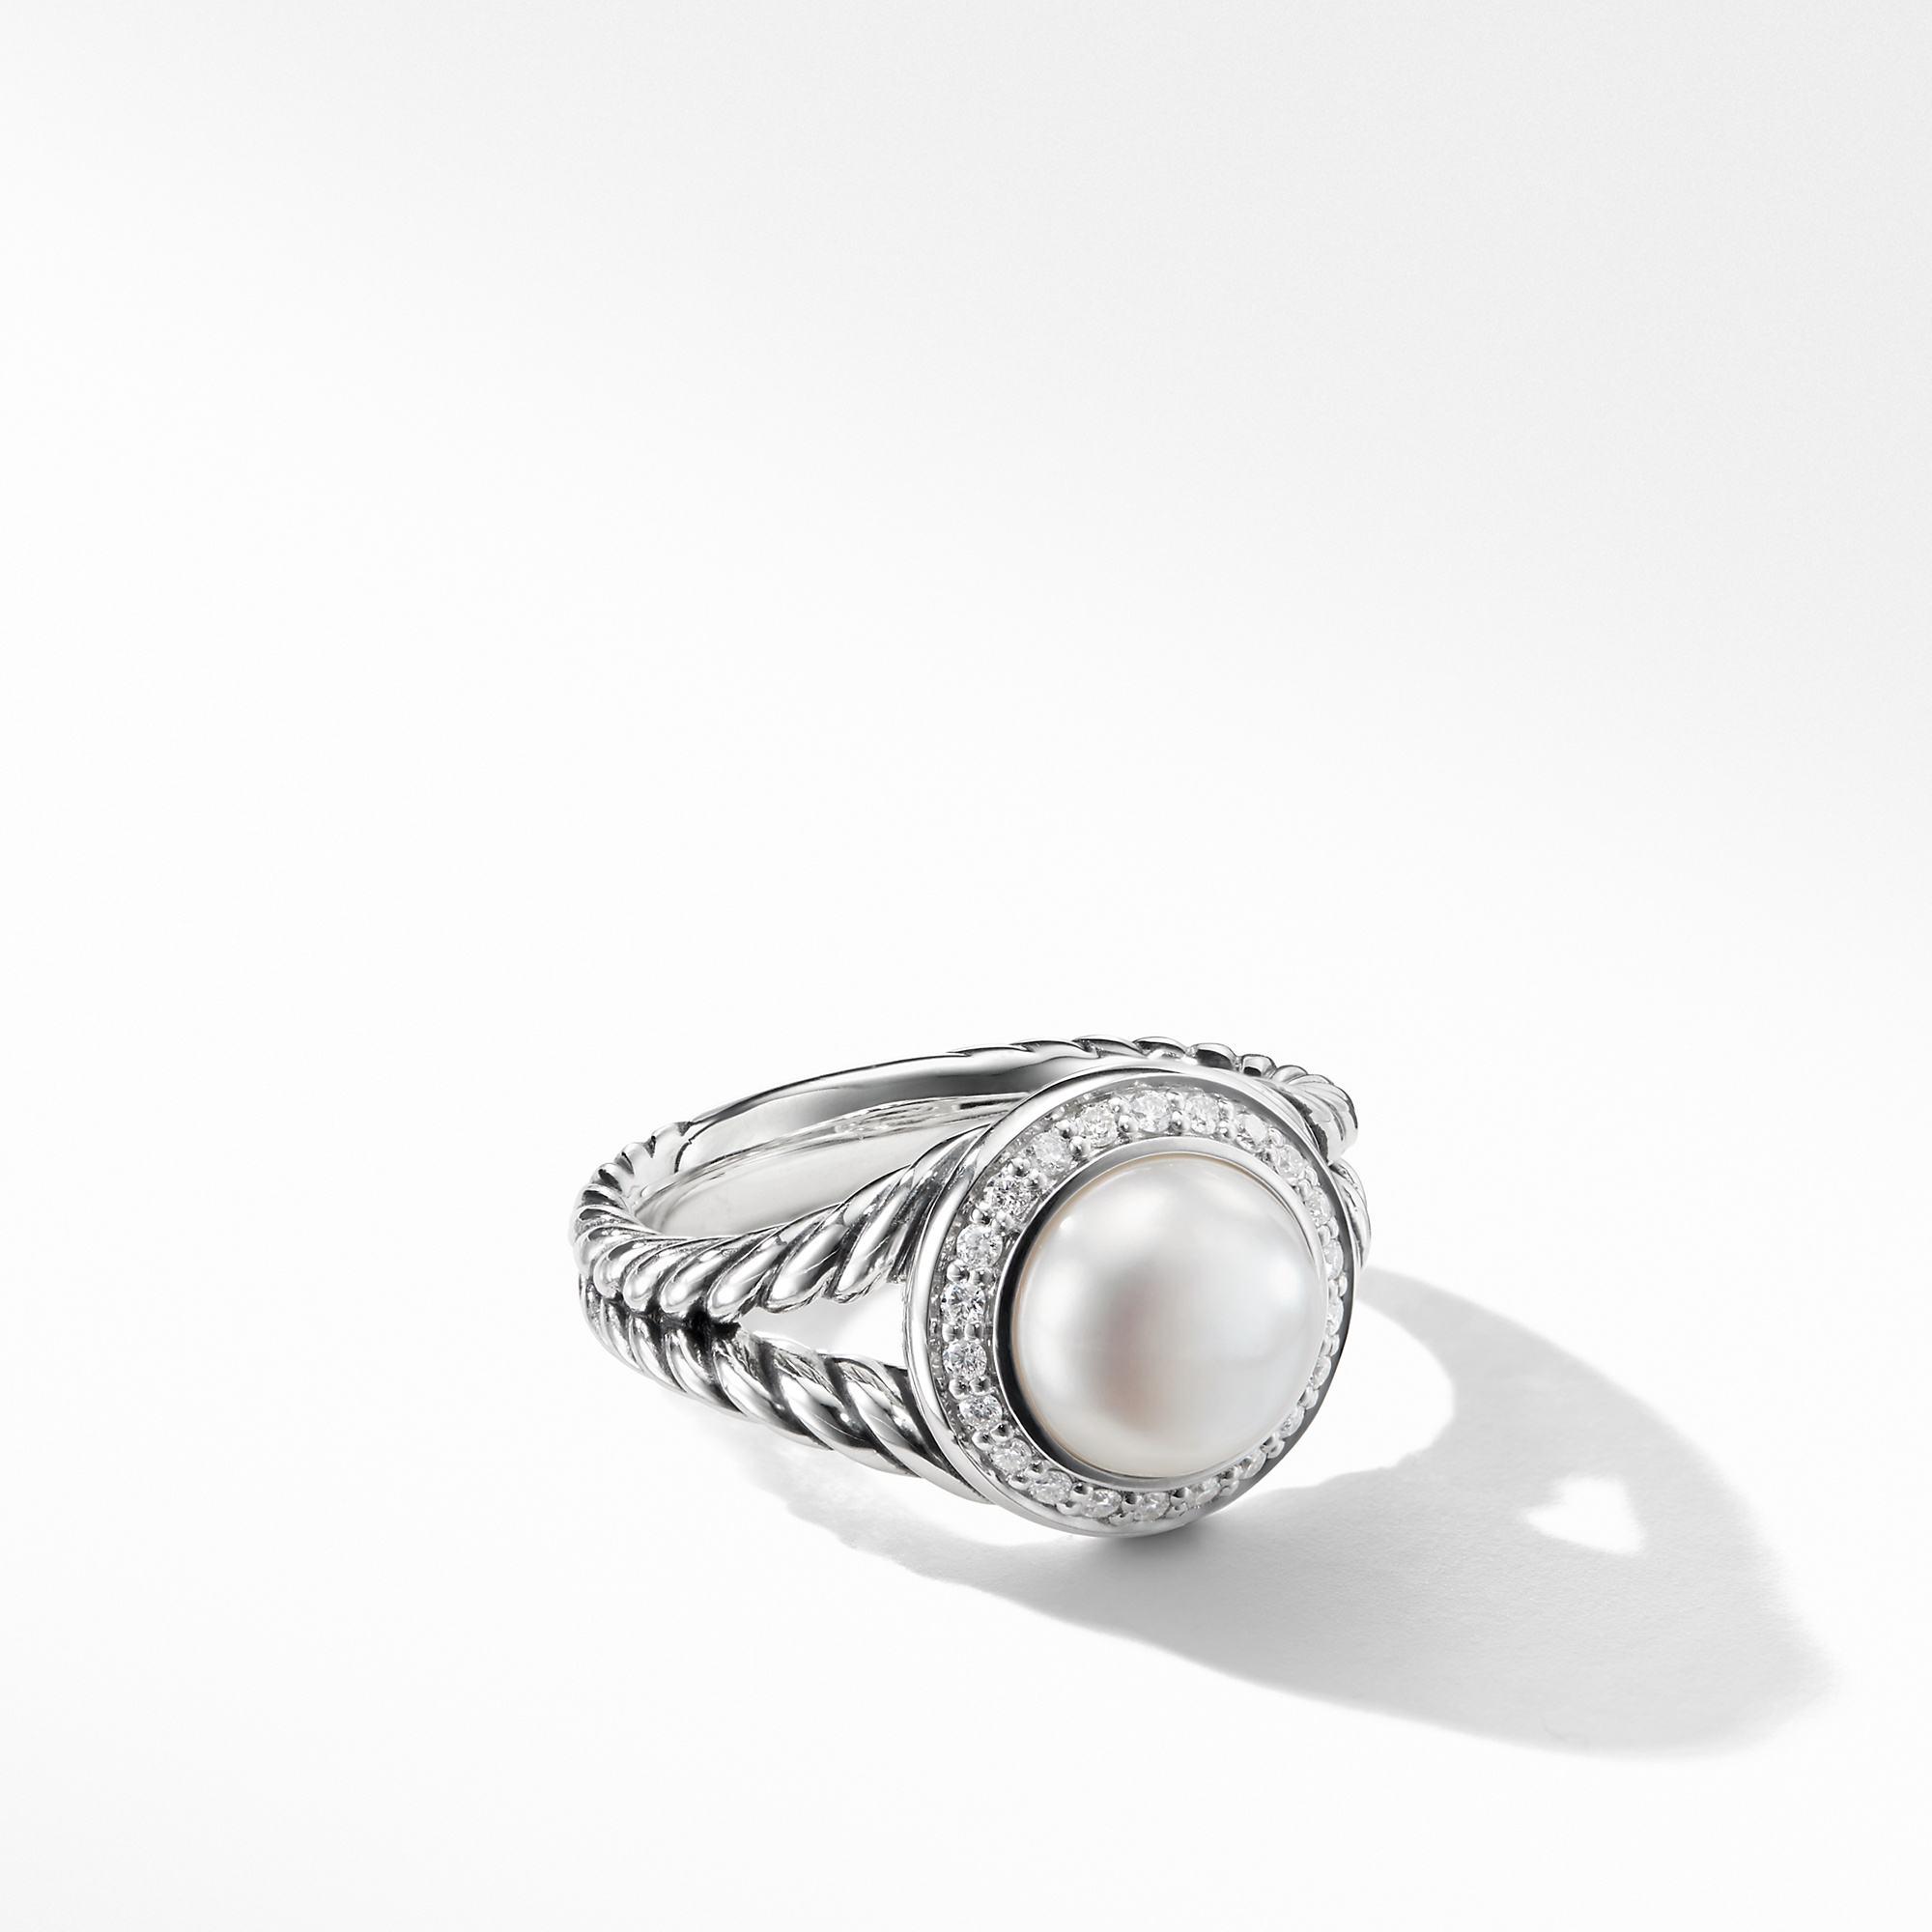 David Yurman Albion Pearl Ring with Diamonds, size 6.5